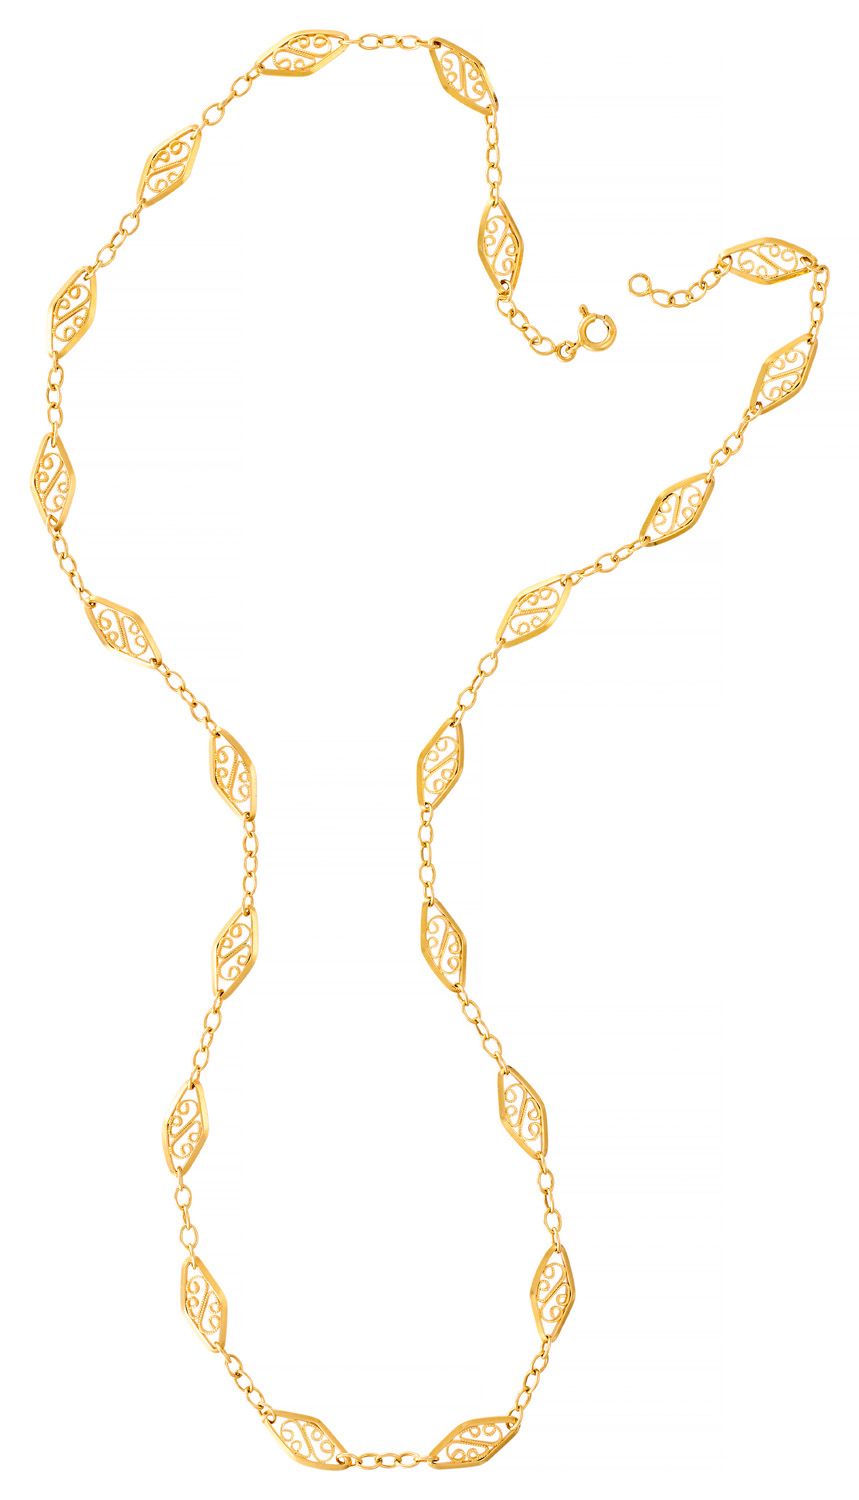 Collier draperie aus Gelbgold

L: 60 cm

Kg: 17,50 g (18K-750/1000)